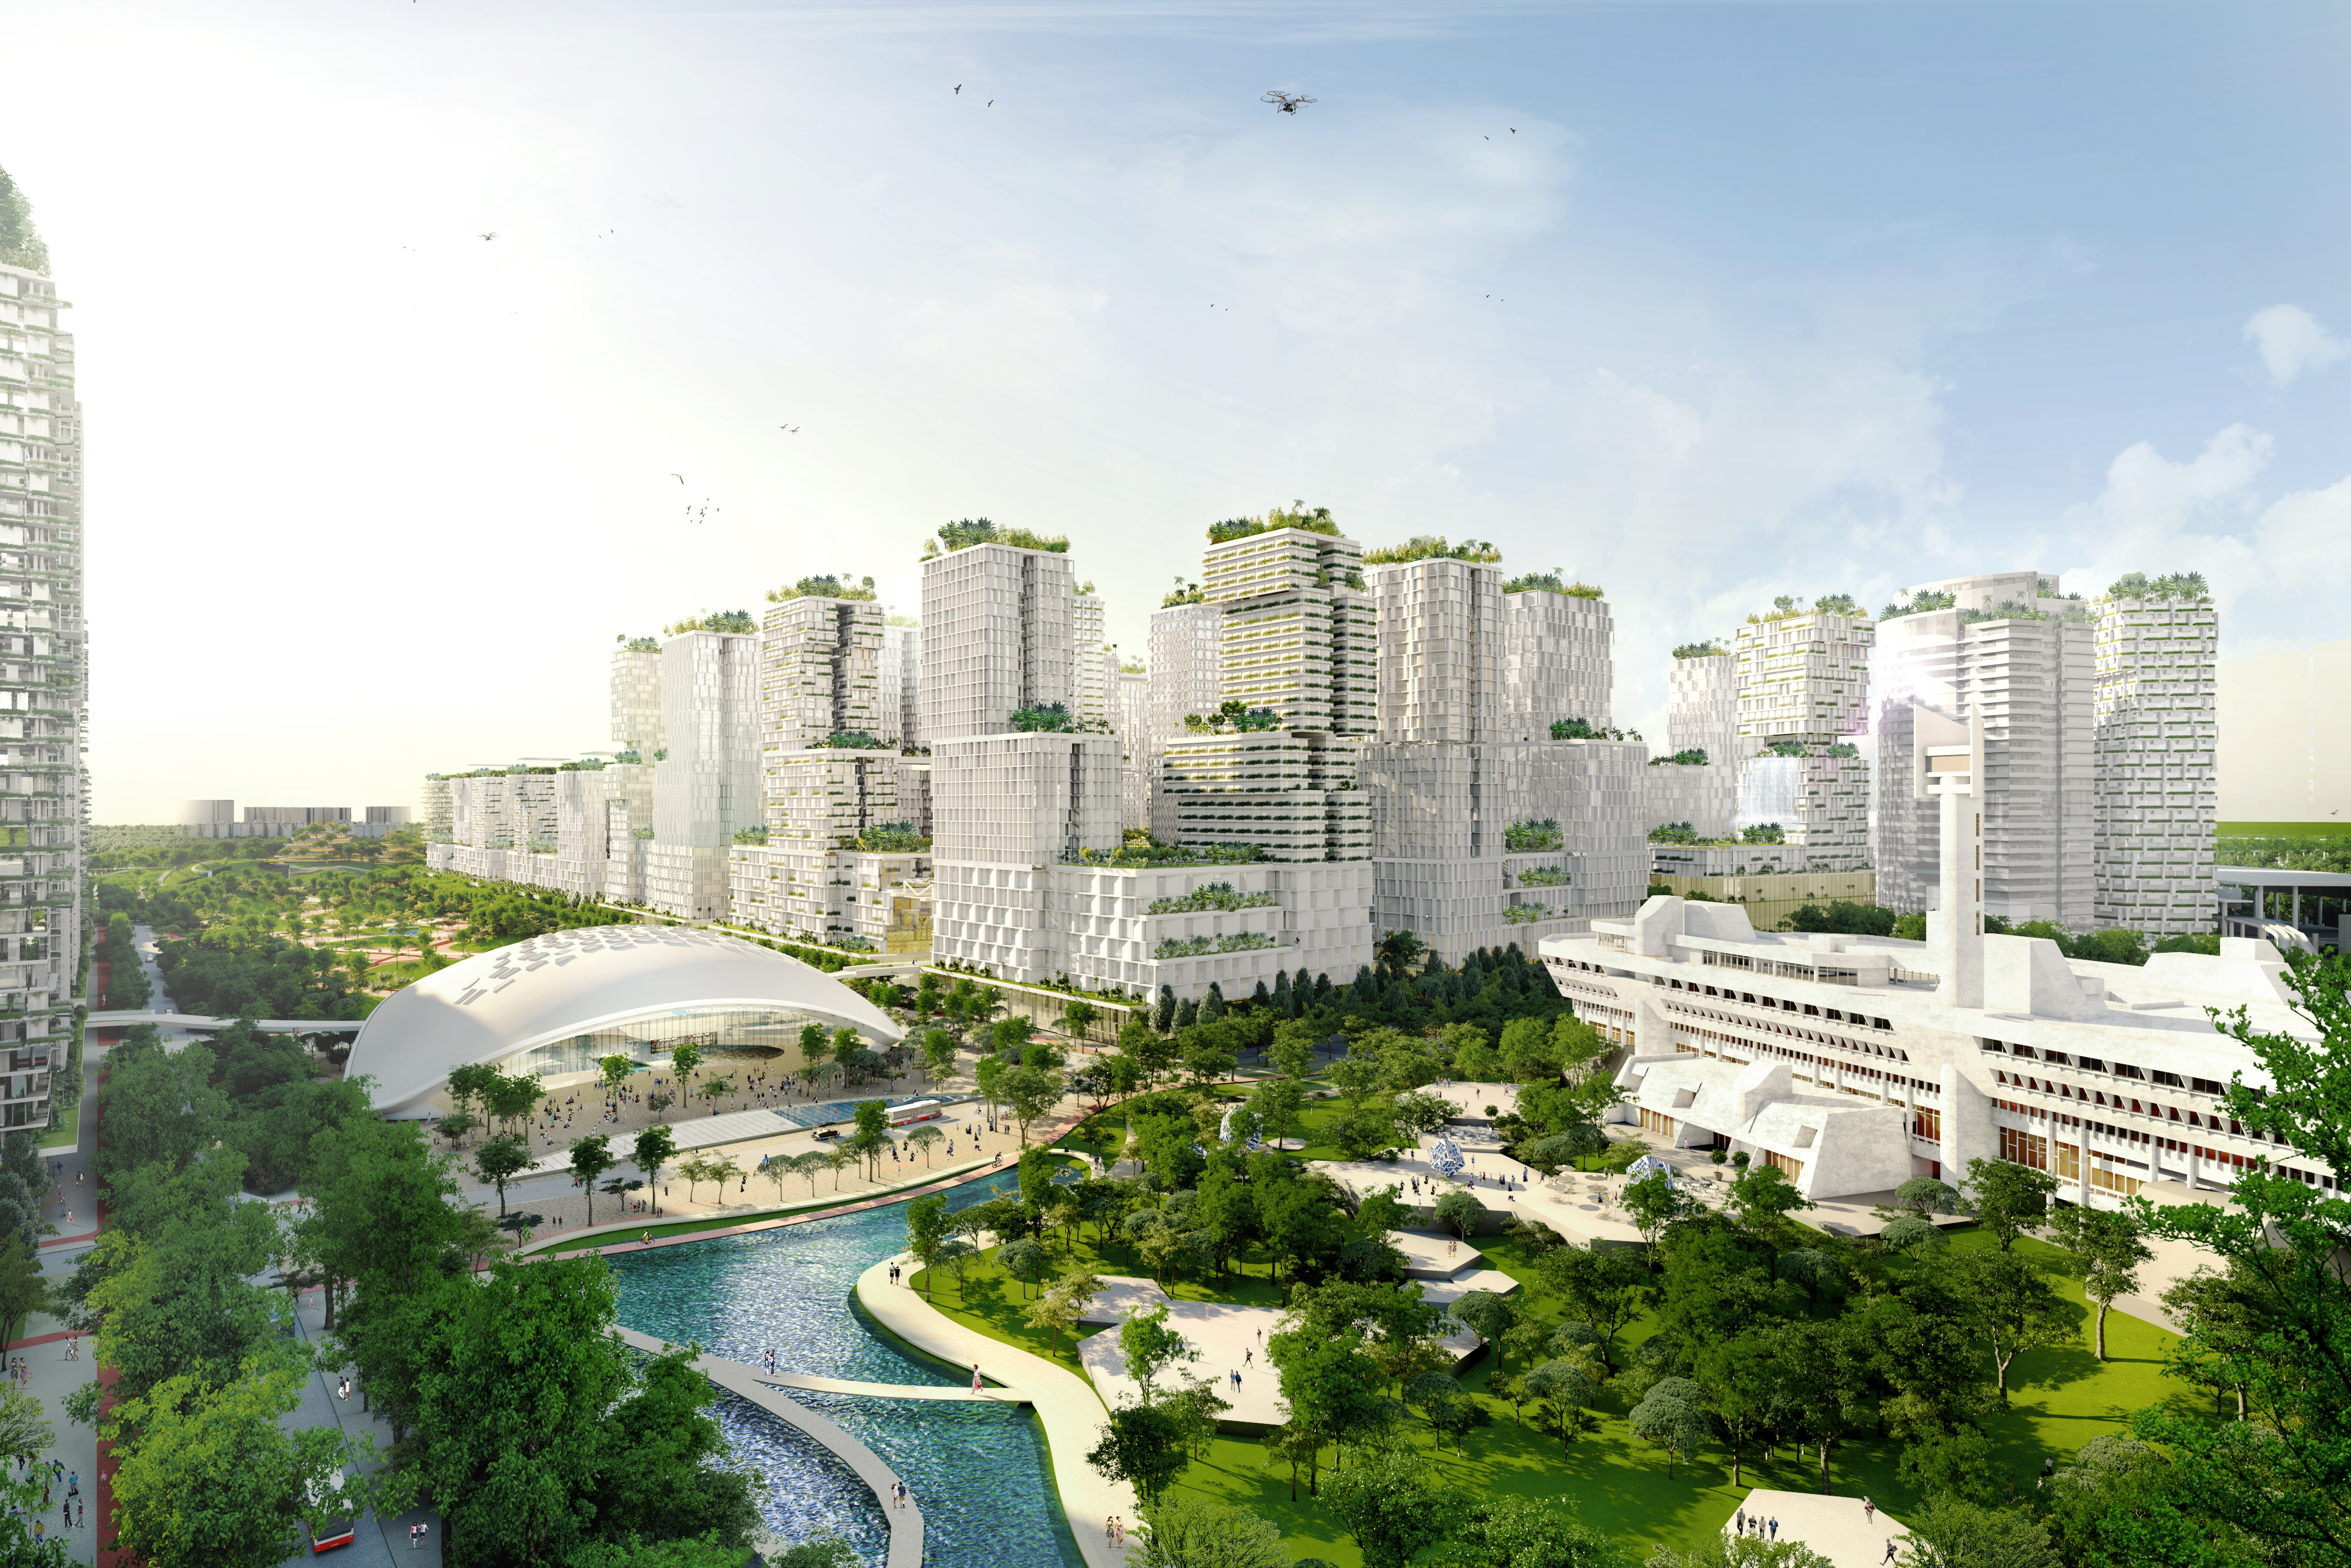 Masterplan for Jurong Lake District Singapore unveiled